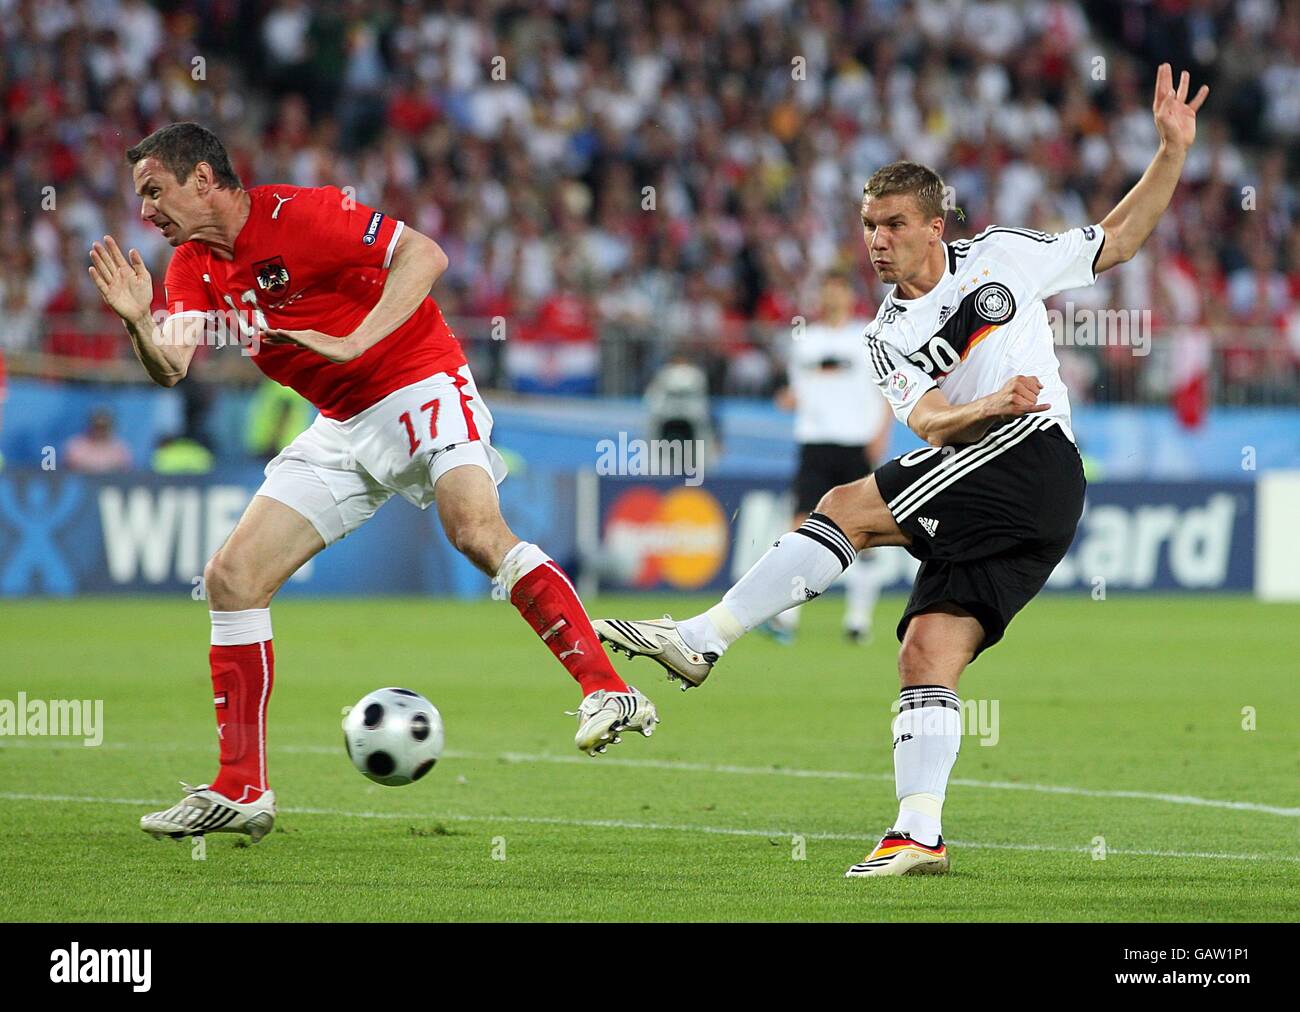 Calcio - Campionato europeo UEFA 2008 - Gruppo B - Austria / Germania - Stadio Ernst Happel. La tedesca Lukas Podolski (r) sfida l'austriaca Martin Hiden (l) per la palla Foto Stock